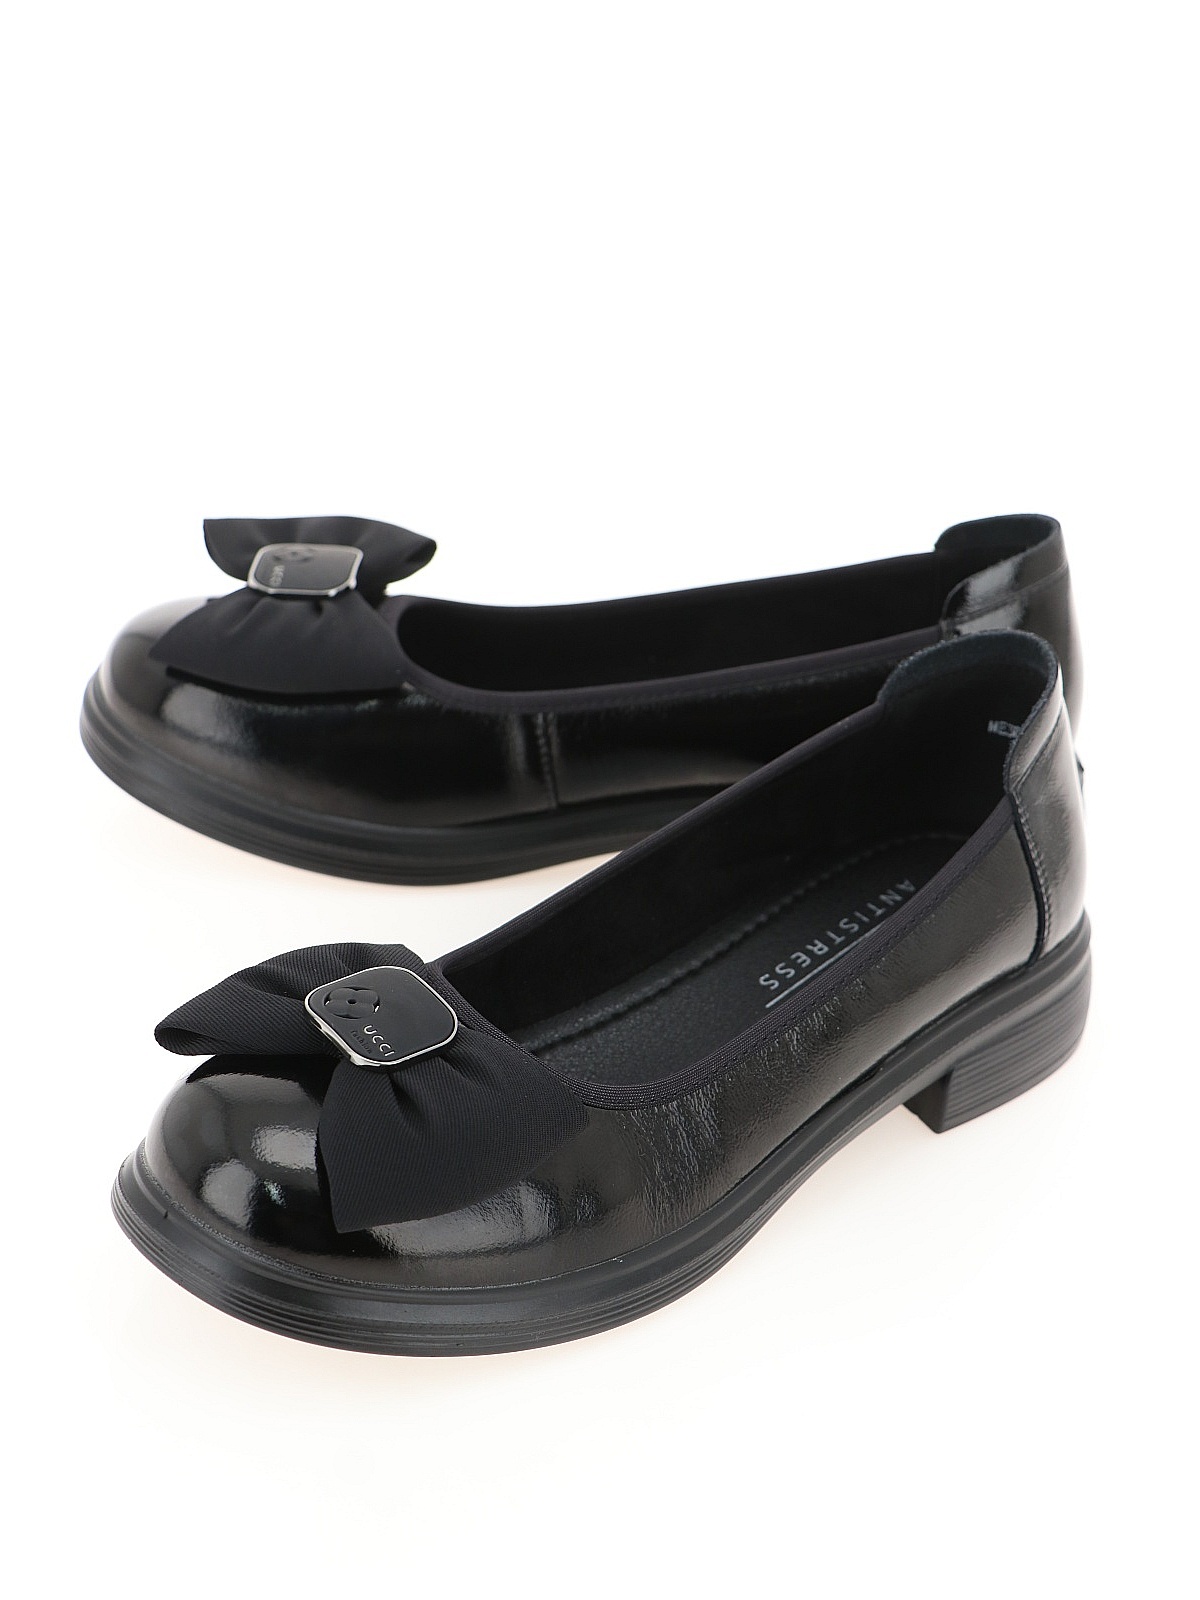 Туфли женские Baden ME306-02 черные 41 RU